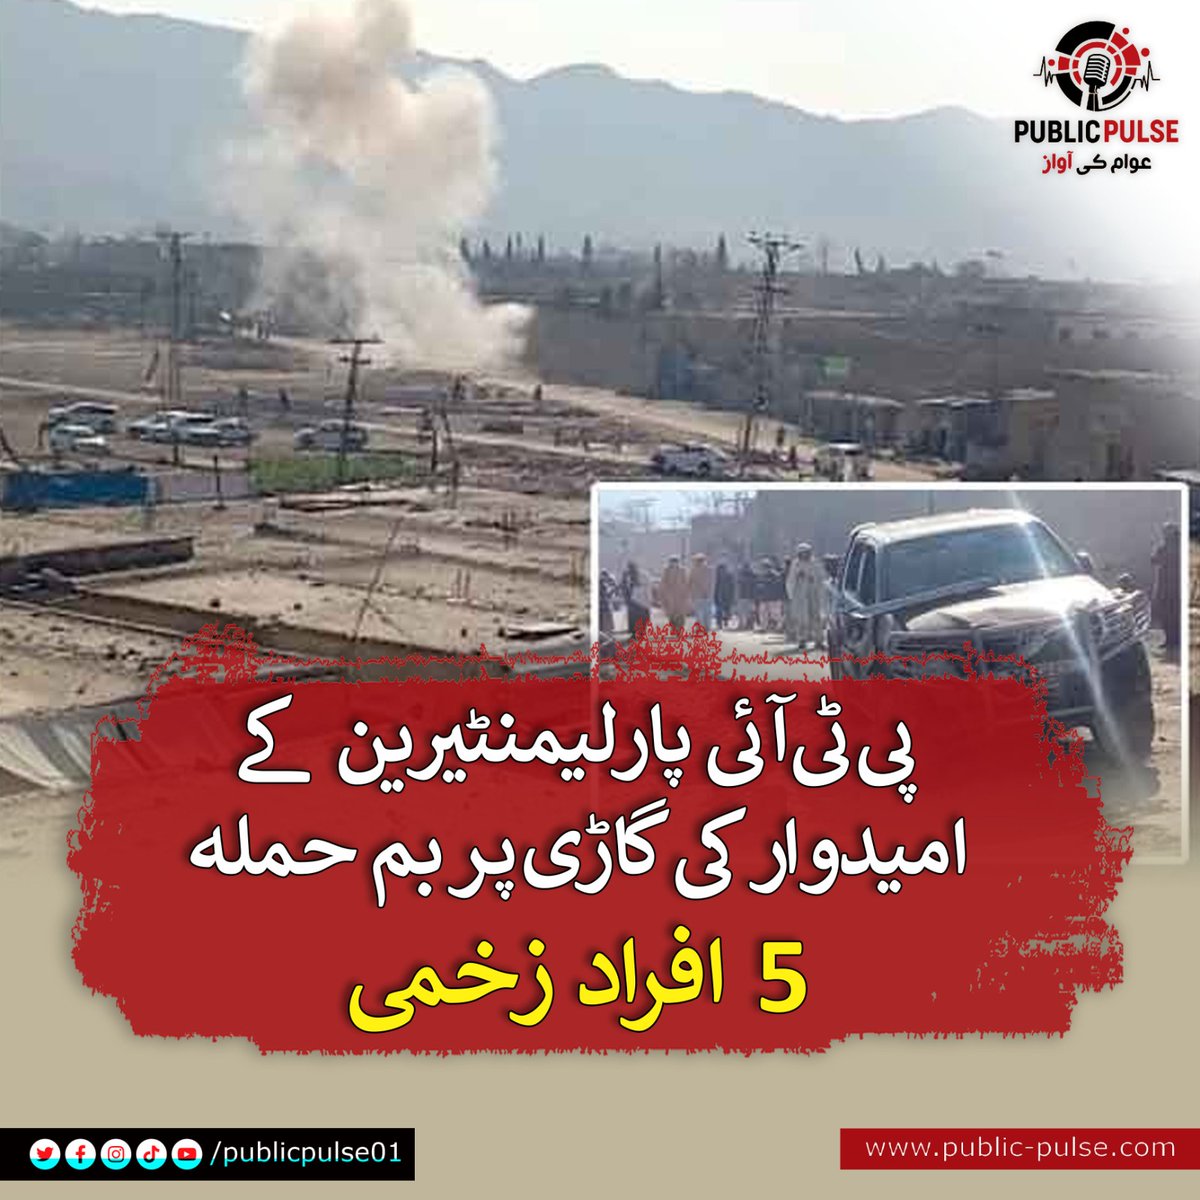 جنوبی وزیرستان میں صابق رکنِ صوبائی اسمبلی اور پی ٹی آئی پارلیمنٹیرین کے امیدوار نصیراللہ وزیر کی گاڑی پر بم سے حملہ کیا گیا۔دھماکے میں نصیر اللہ محفوظ رہے جبکہ دیگر 5 افراد زخمی ہو گئے۔ واضح رہے کہ نصیراللہ وزیر پی کے 110 سے  انتخابی میدان میں حصہ اترے ہیں۔

#BombAttack #PTI